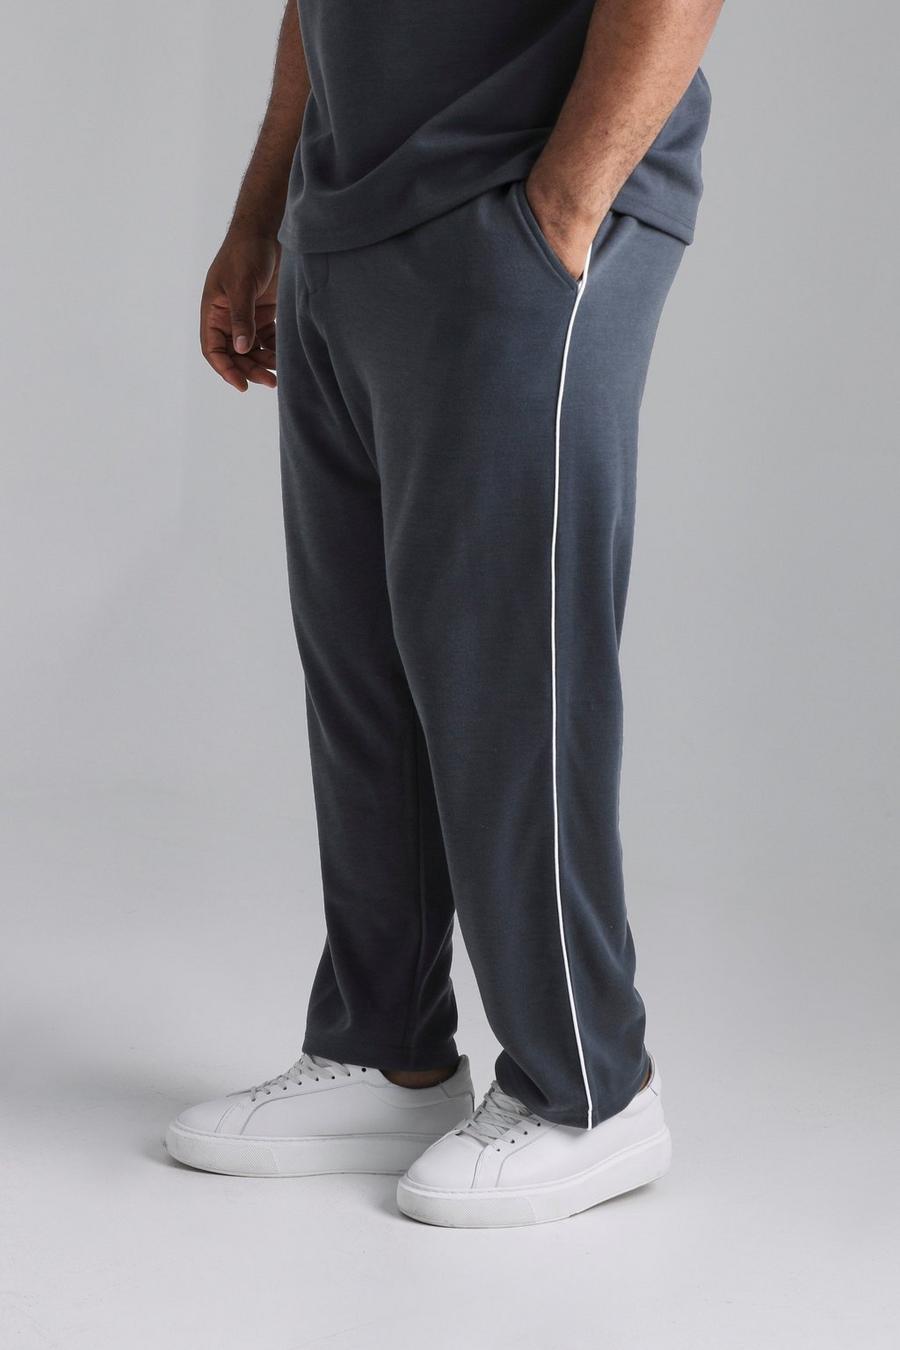 Pantalón Plus ajustado con ribete, Dark grey grigio